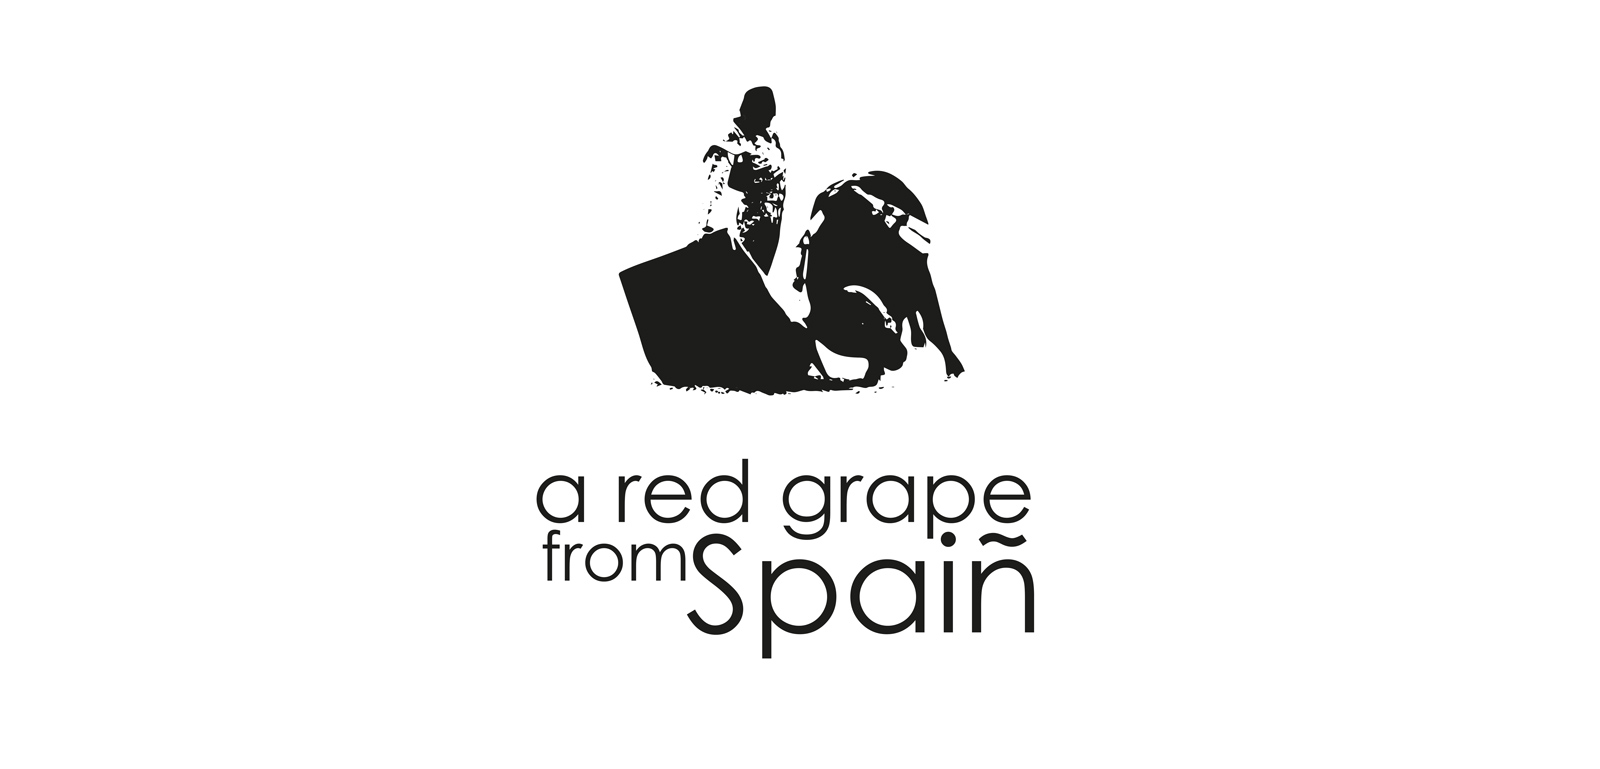 Diseño logo bodegas comercializadoras de vino tinto a nivel internacional